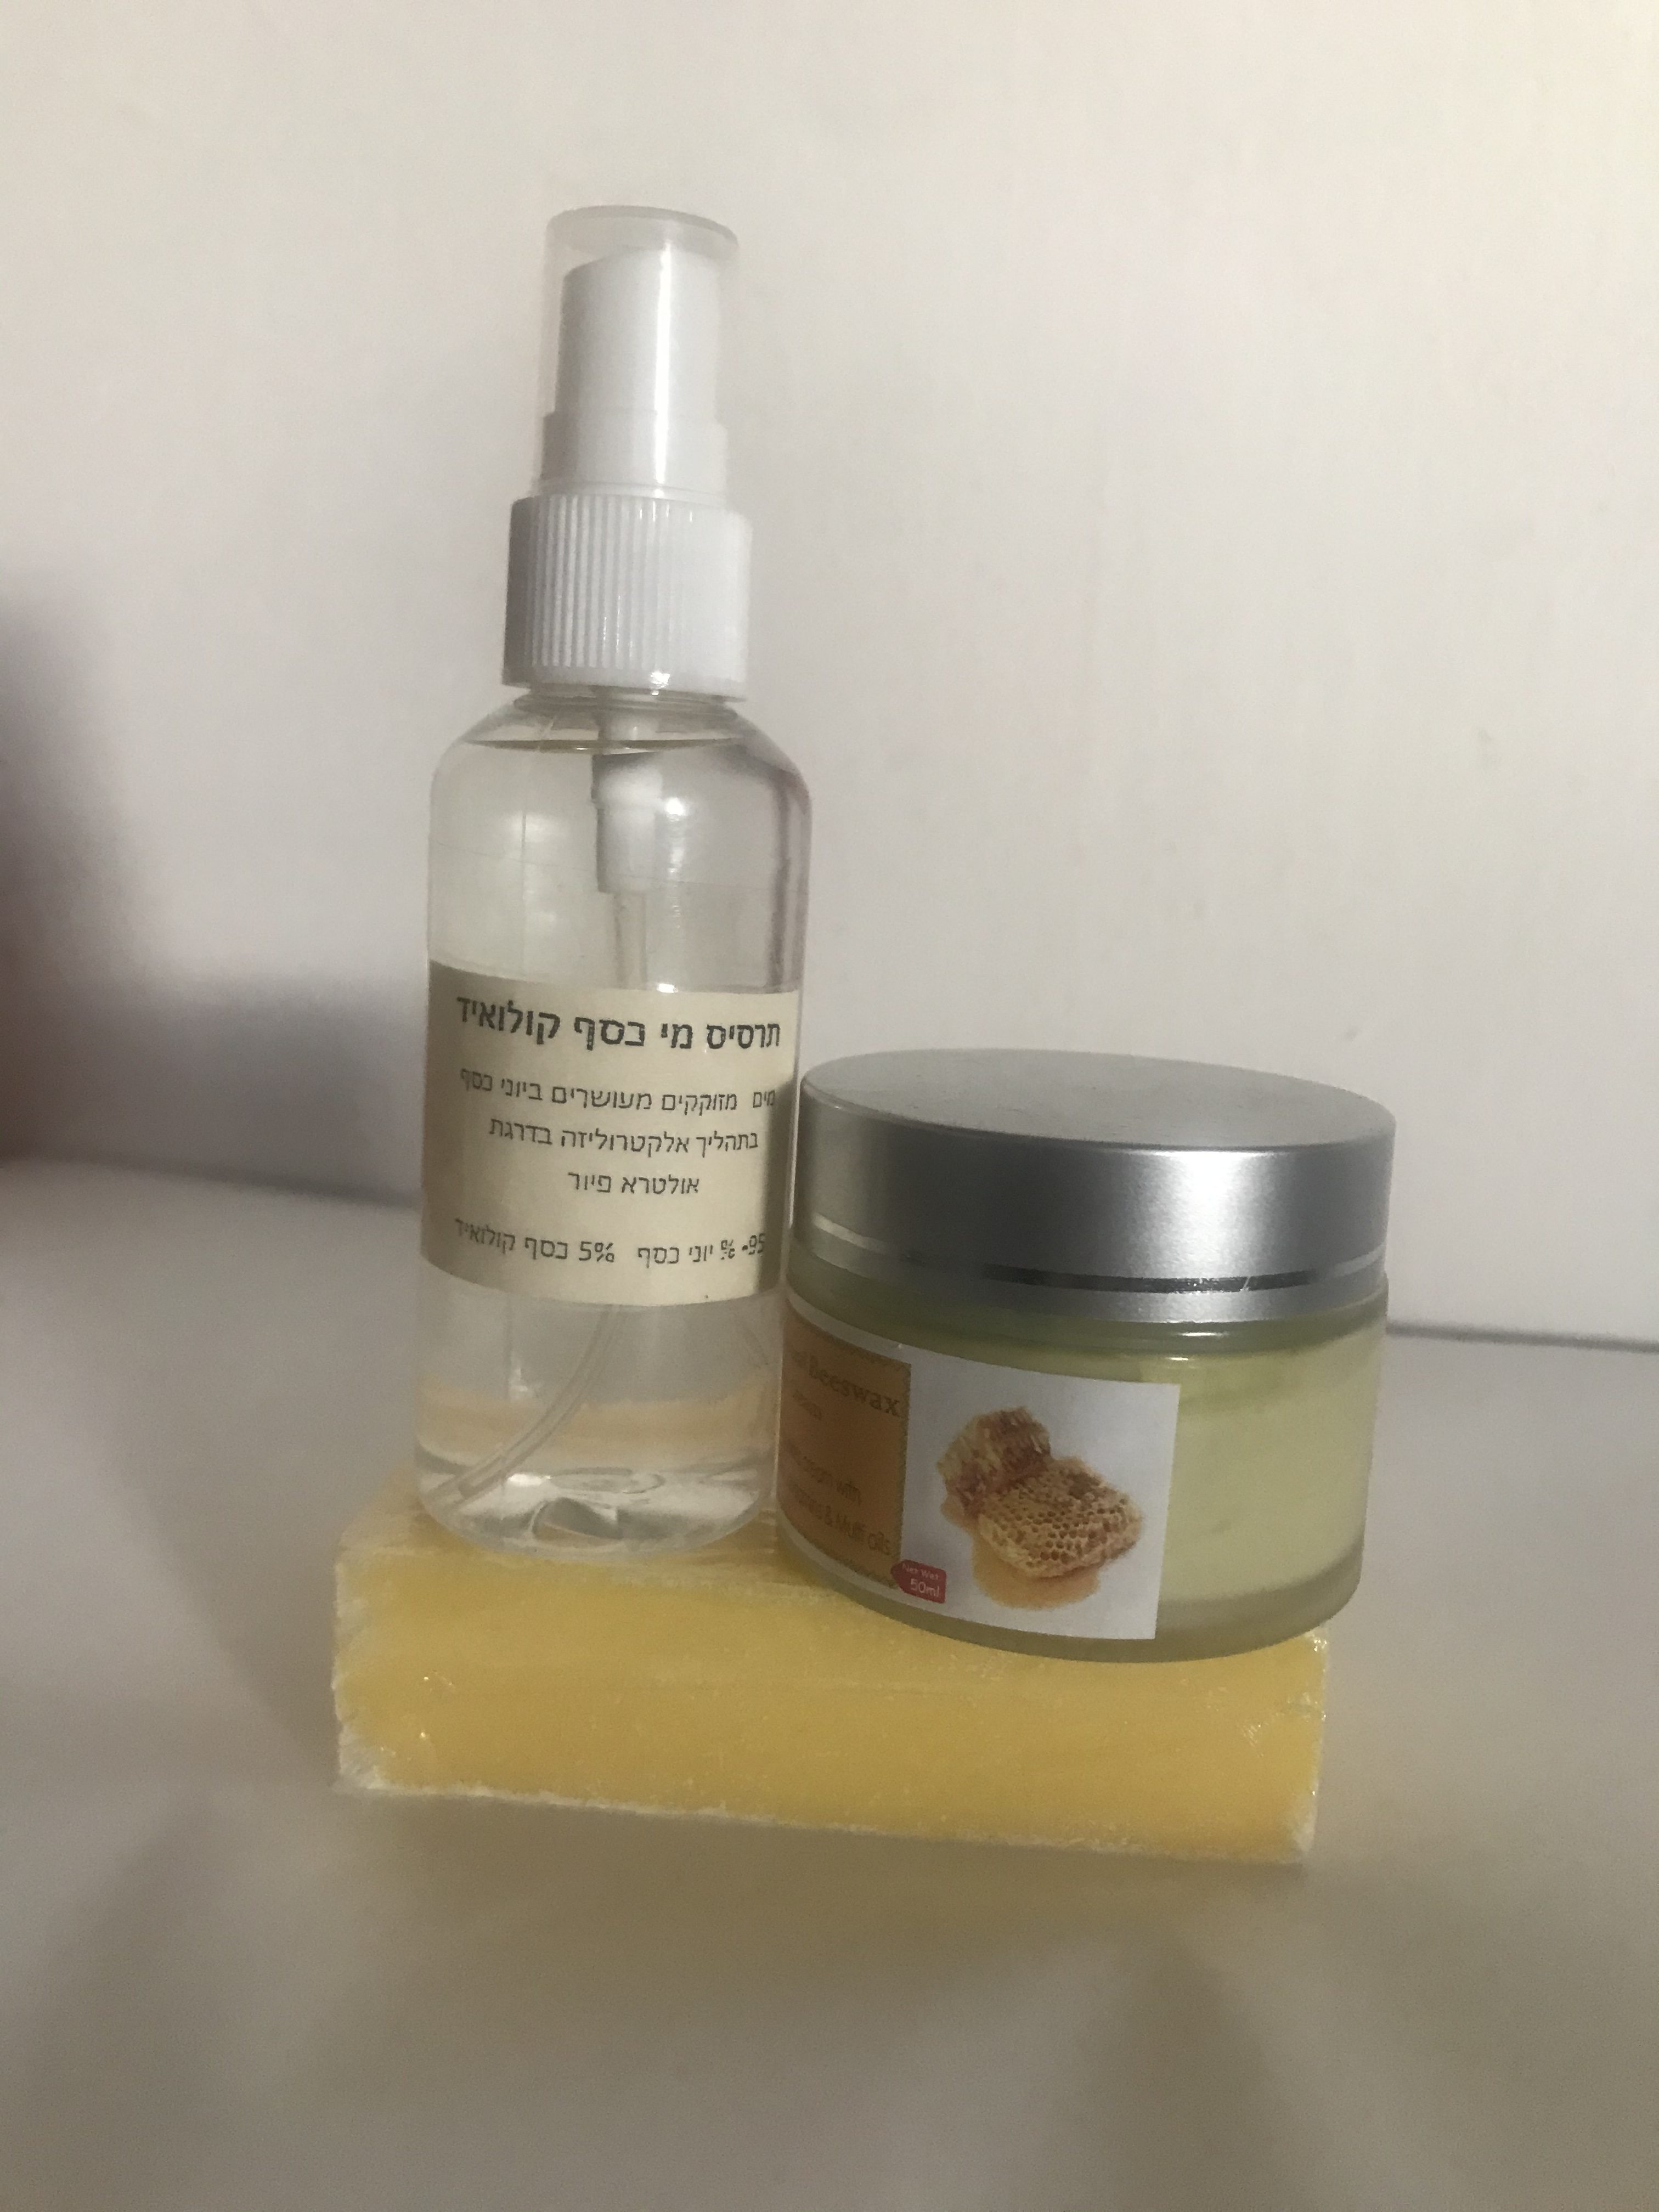 "פסוריאה" קרם וסבון טיפוליים - שעוות דבורים עם מולטי ויטמינים ושמנים-חדש